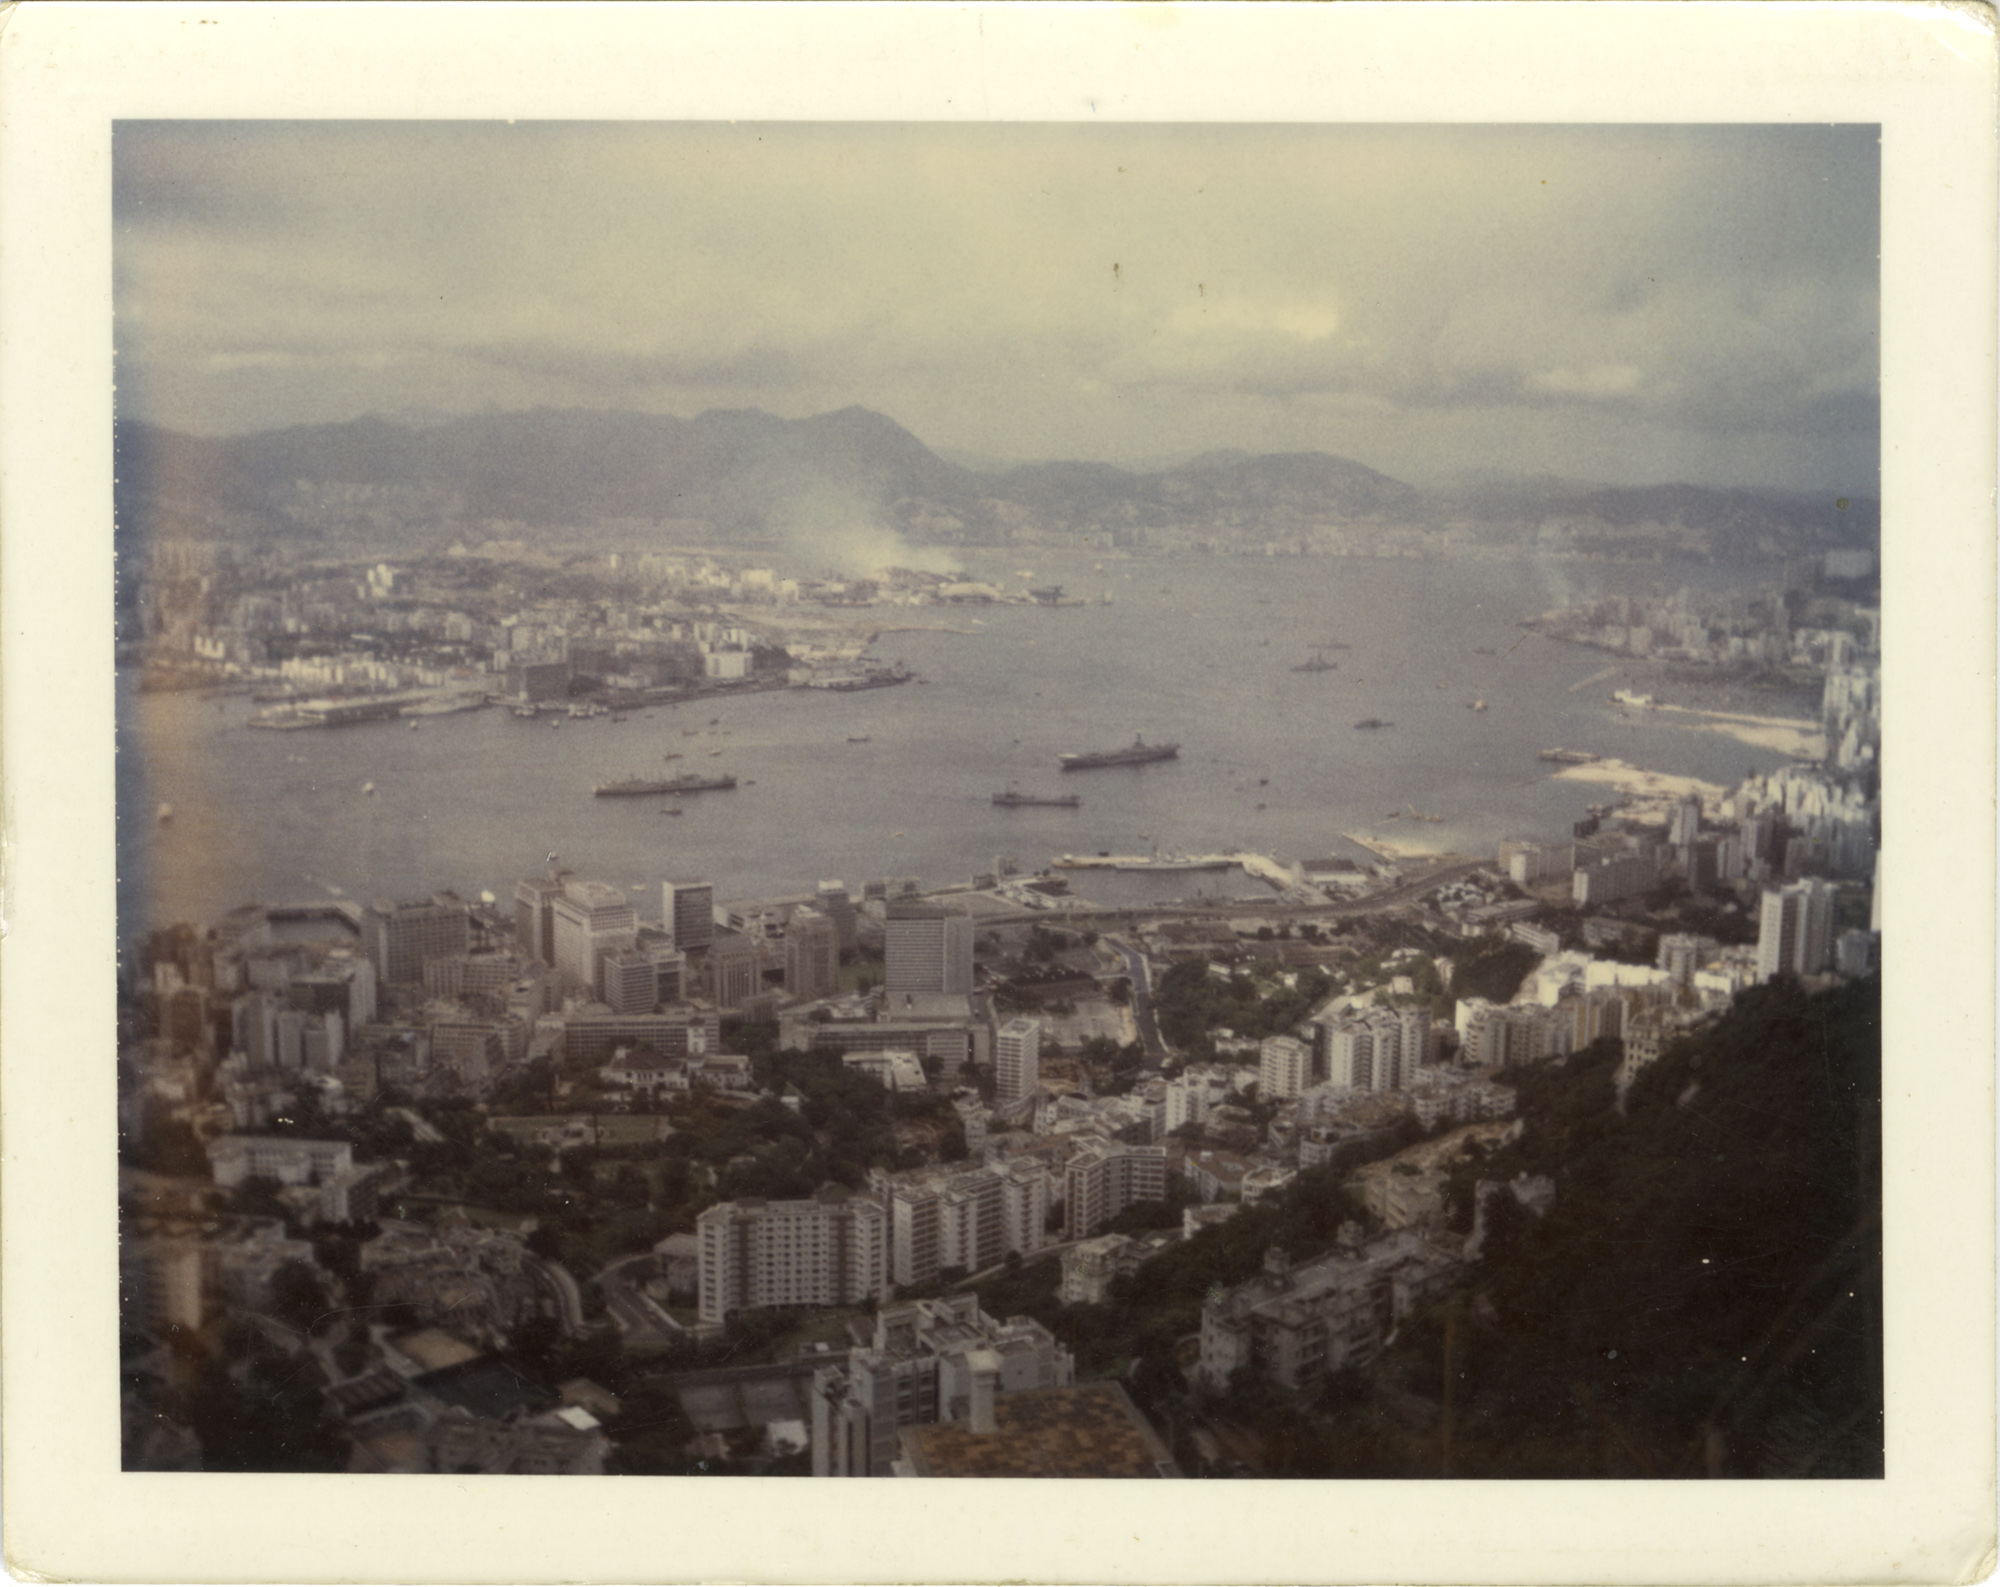 The harbor at Hong Kong in 1967.